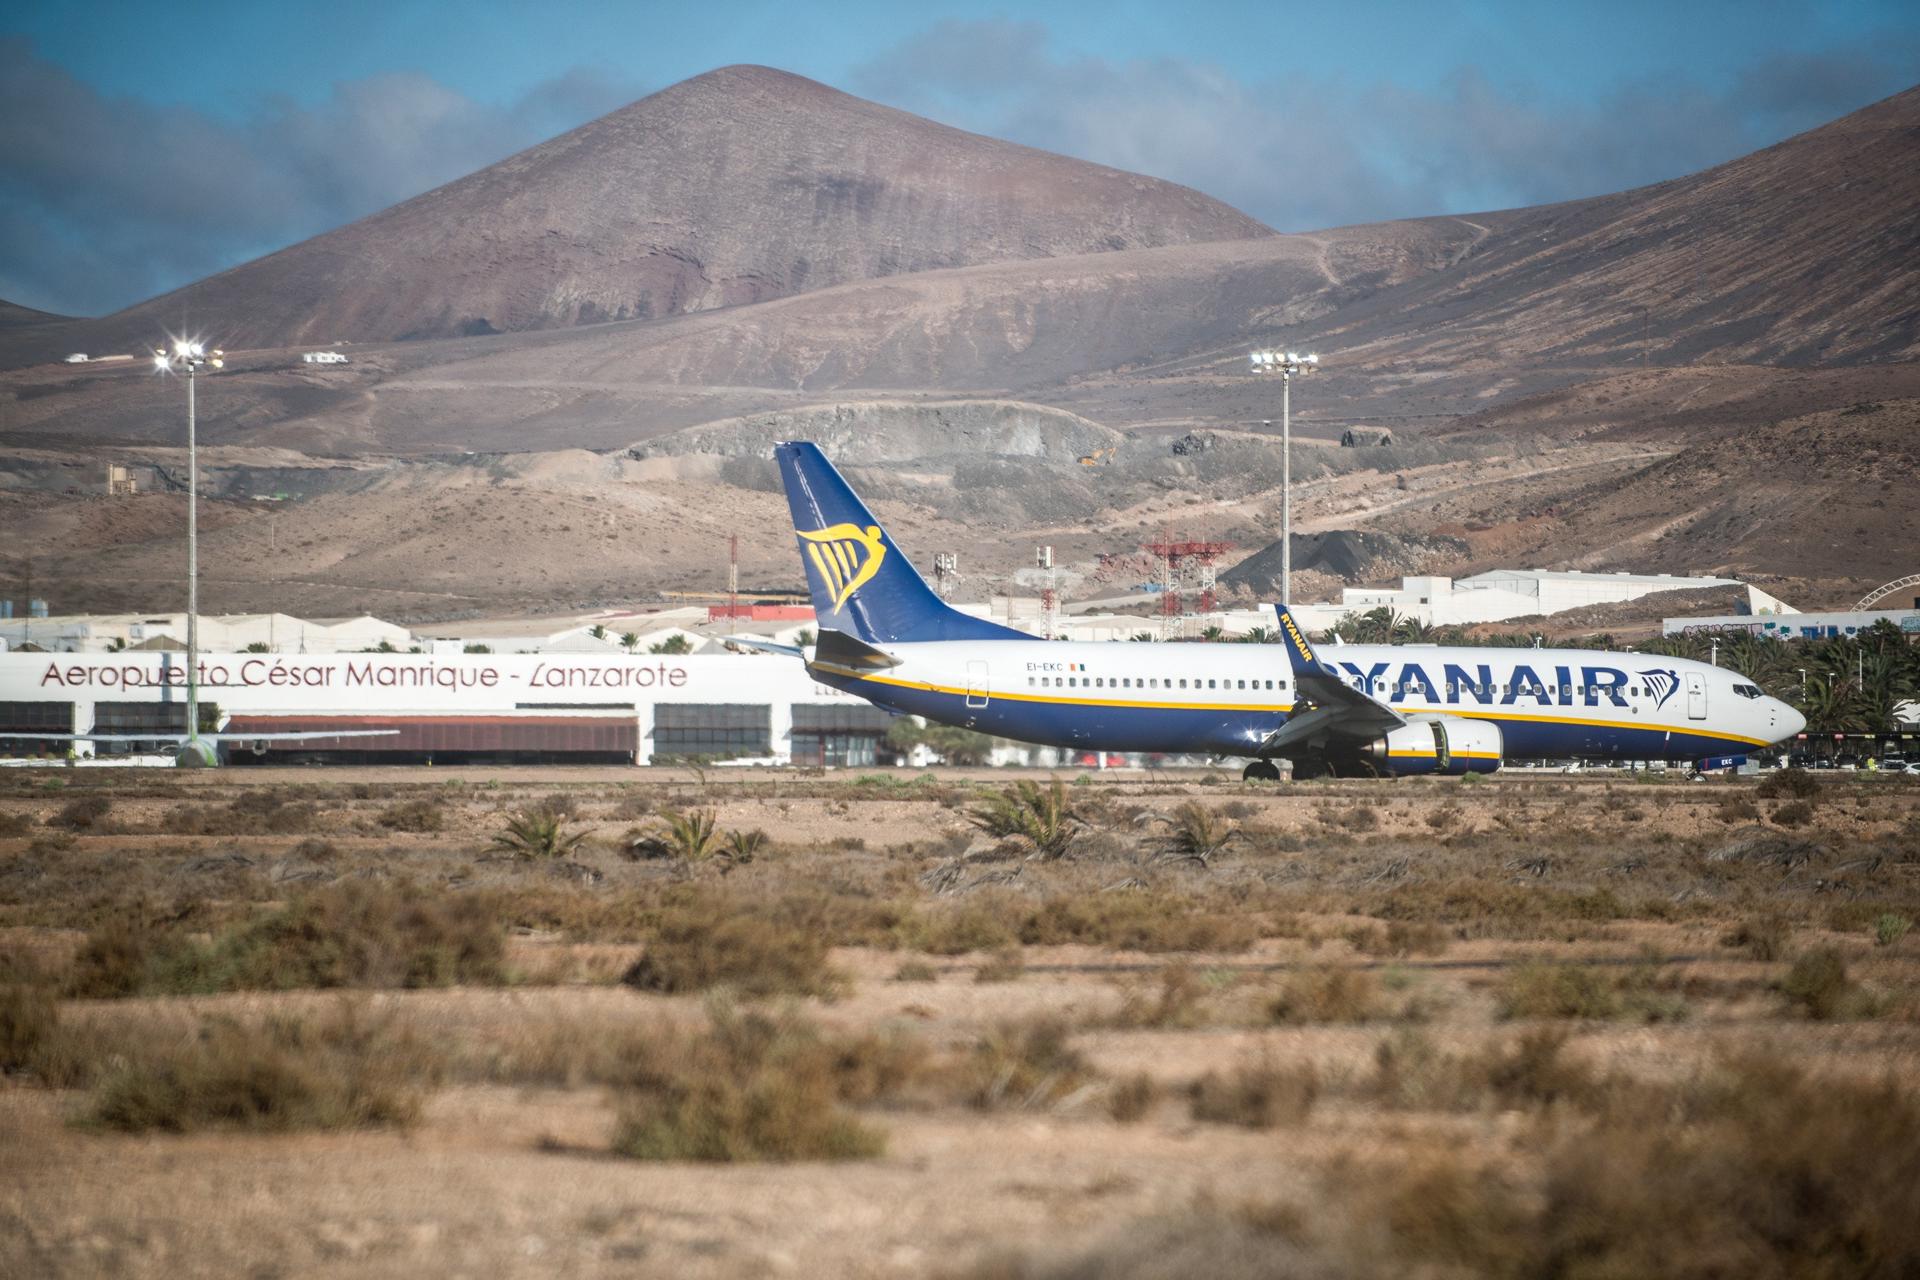 Foto de archivo de un avión aterrizando en el aeropuerto César Manrique de Lanzarote. EFE/Javier Fuentes